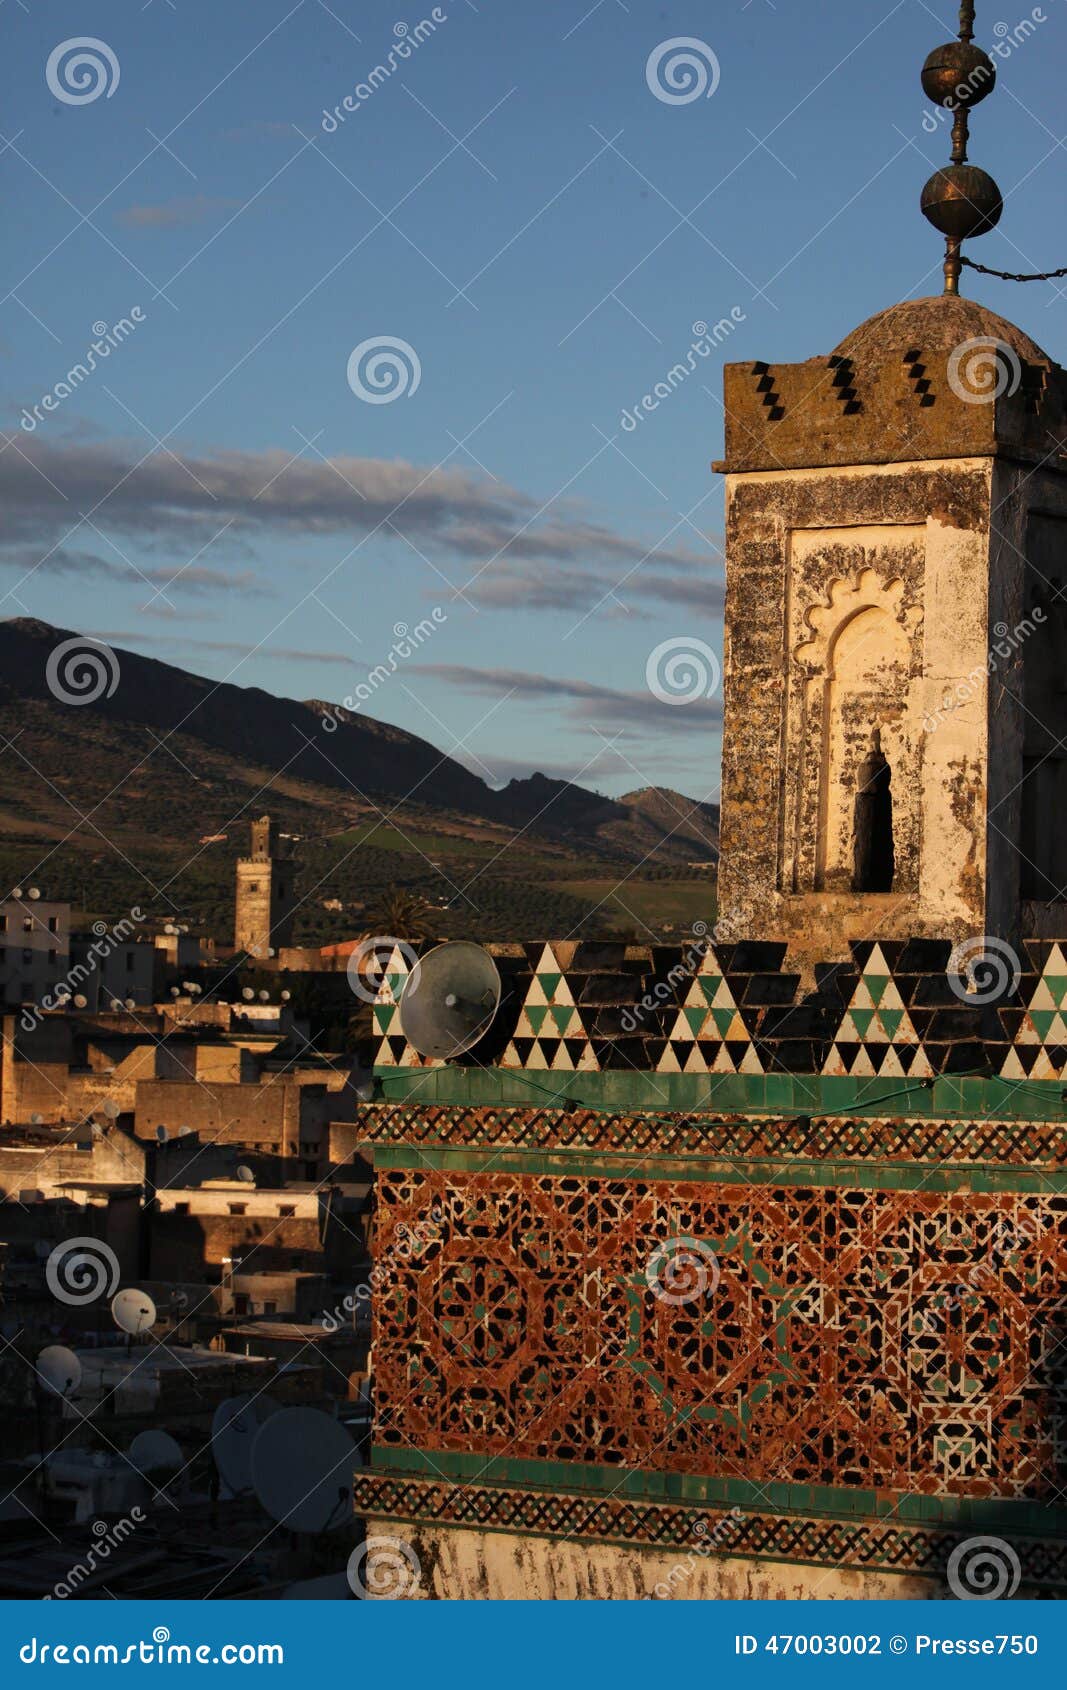 AFRYKA MAROKO FES. Medina stary miasto w dziejowym miasteczku Fes w Maroko w afryce pólnocnej